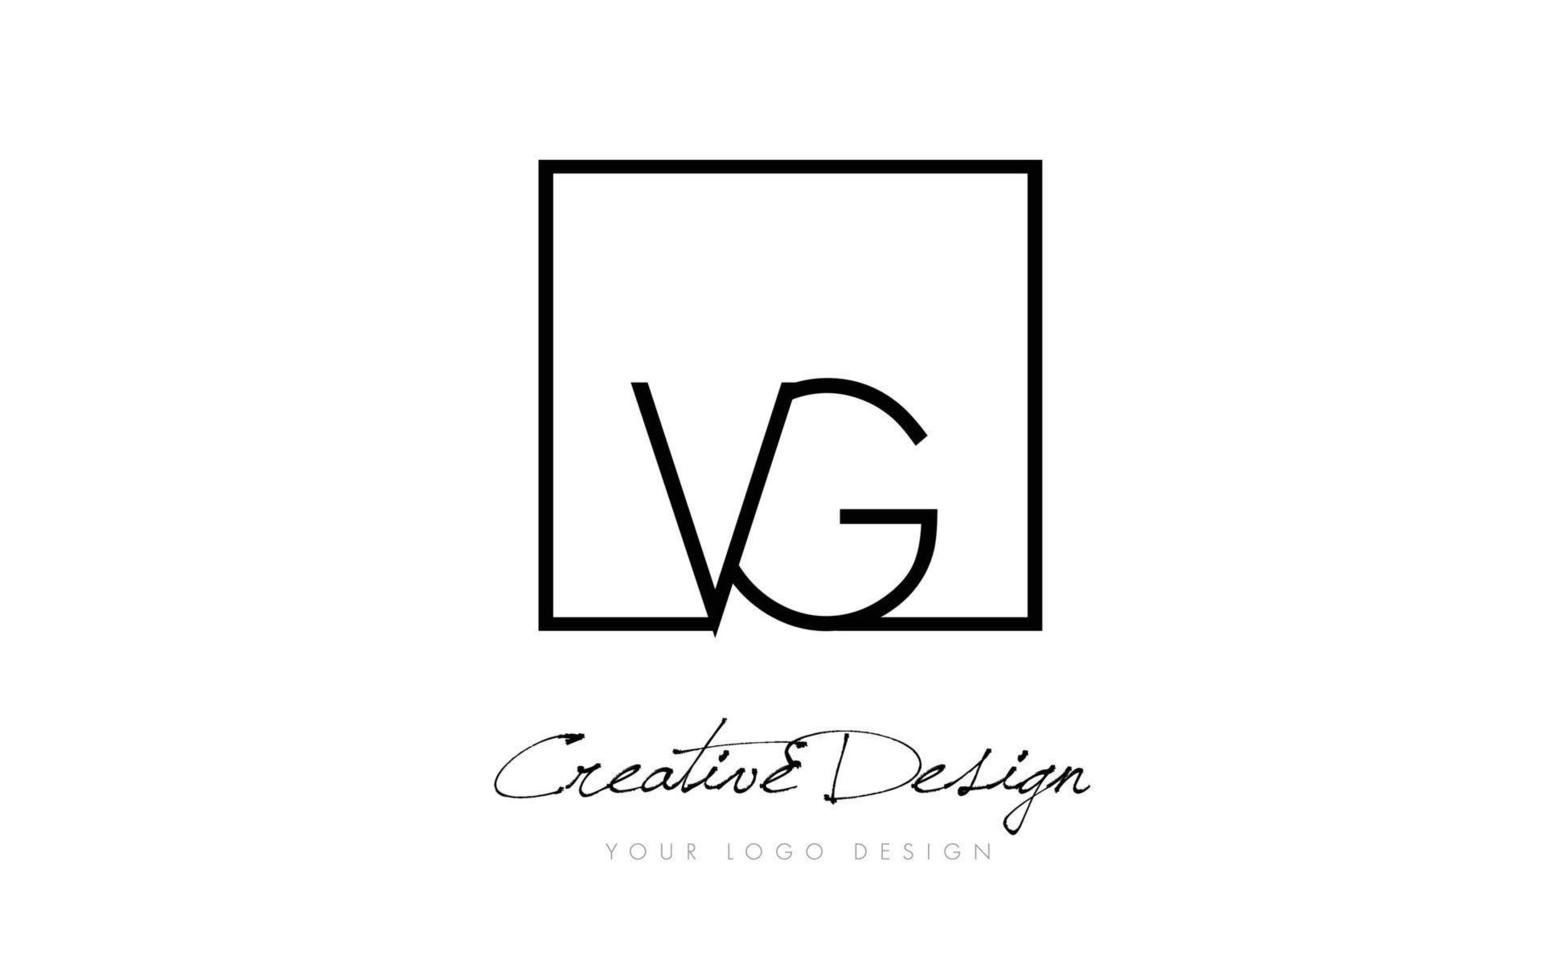 création de logo de lettre de cadre carré vg avec des couleurs noir et blanc. vecteur